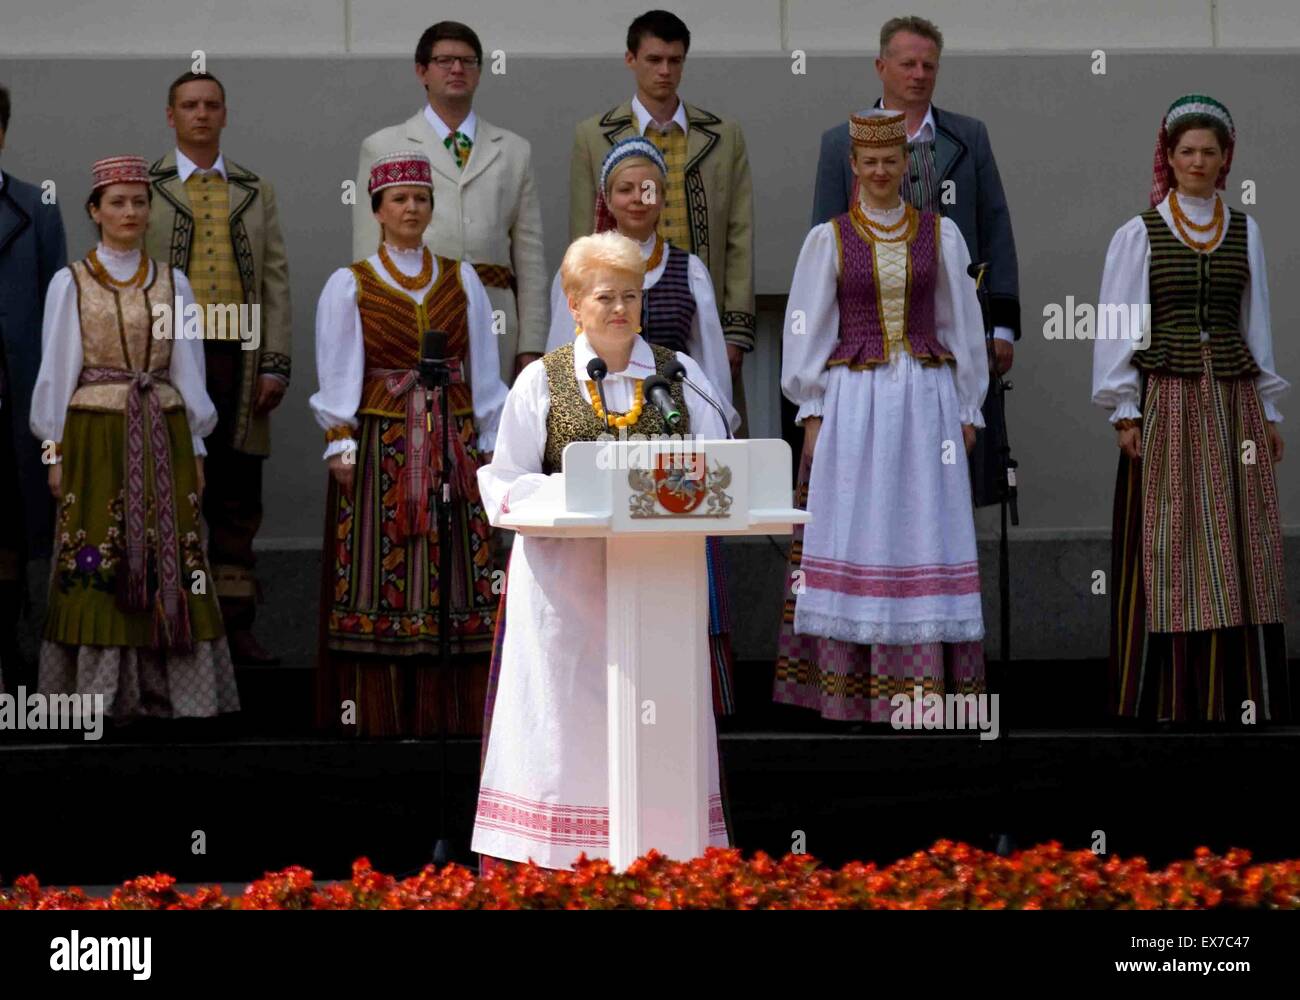 Le Président de la Lituanie, Dalia Grybauskaite, (centre), le port de costumes traditionnels lituaniens traite de la nation, au cours d'État Jour 6 Juillet, 2015 à Vilnius, Lituanie. Banque D'Images